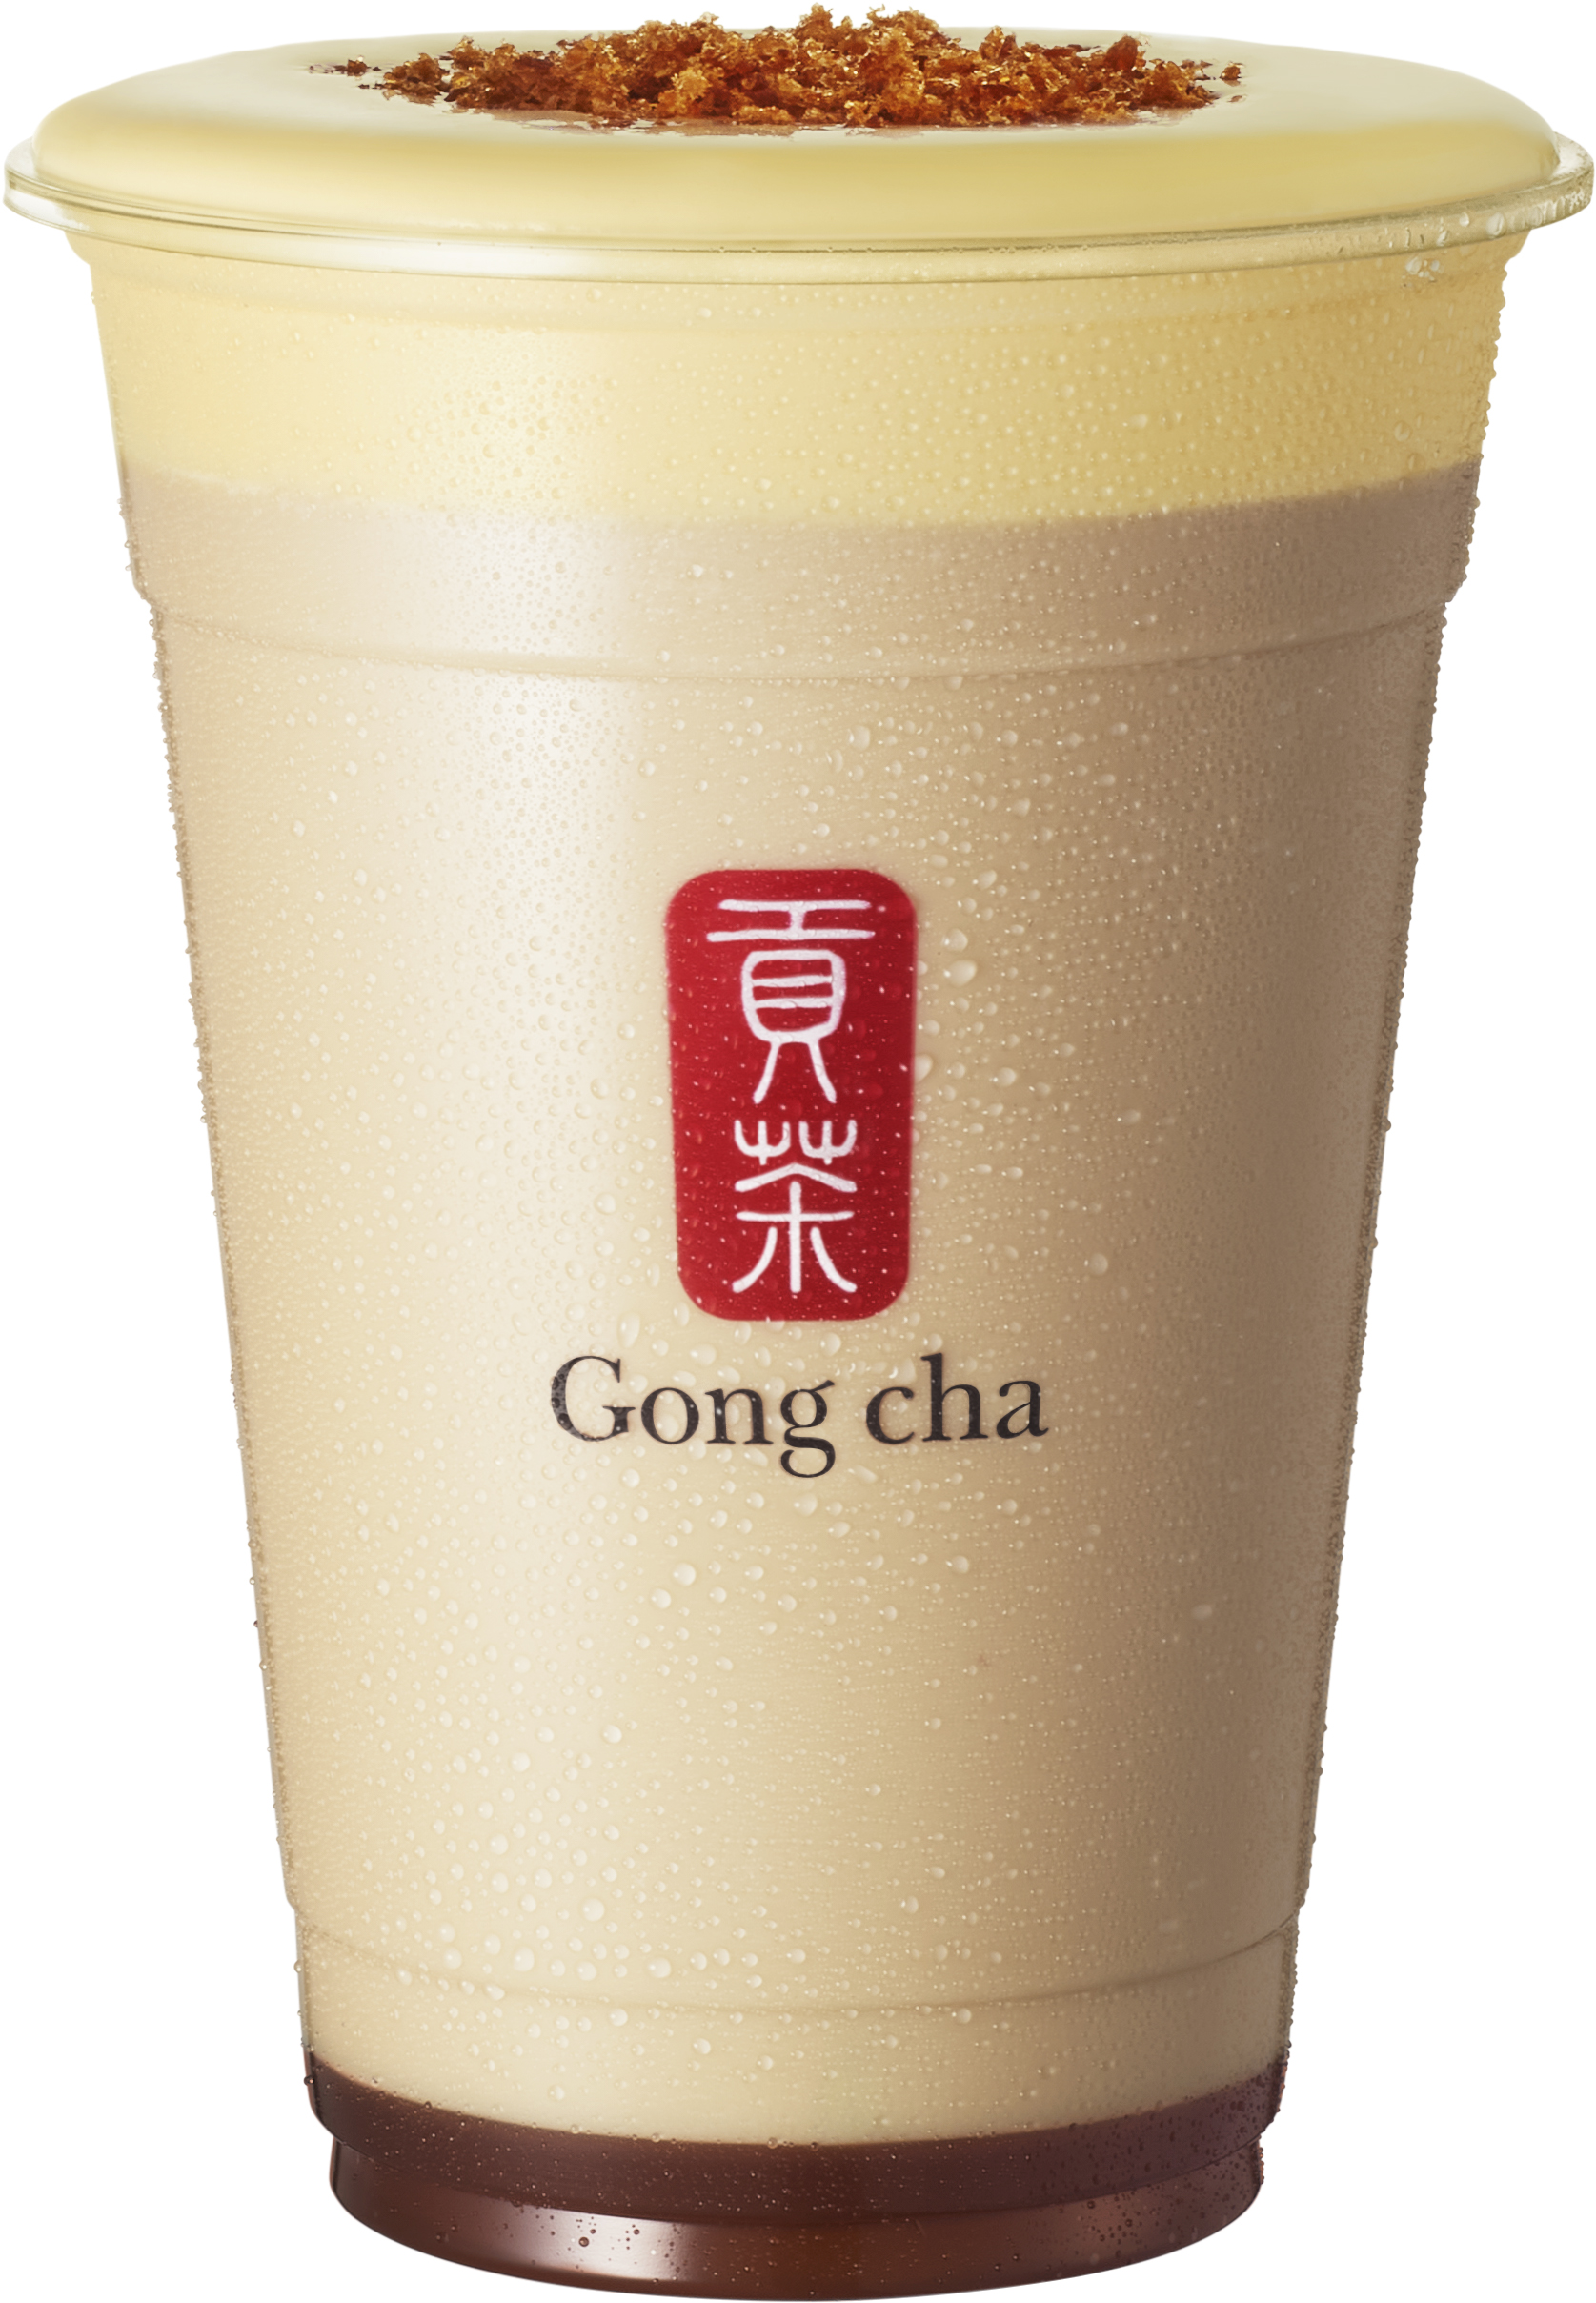 この秋、ゴンチャの新シリーズ発売！デザートのような味わい「Gong cha Tea Dessert」 第一弾は ”クレームブリュレ”のサブ画像2